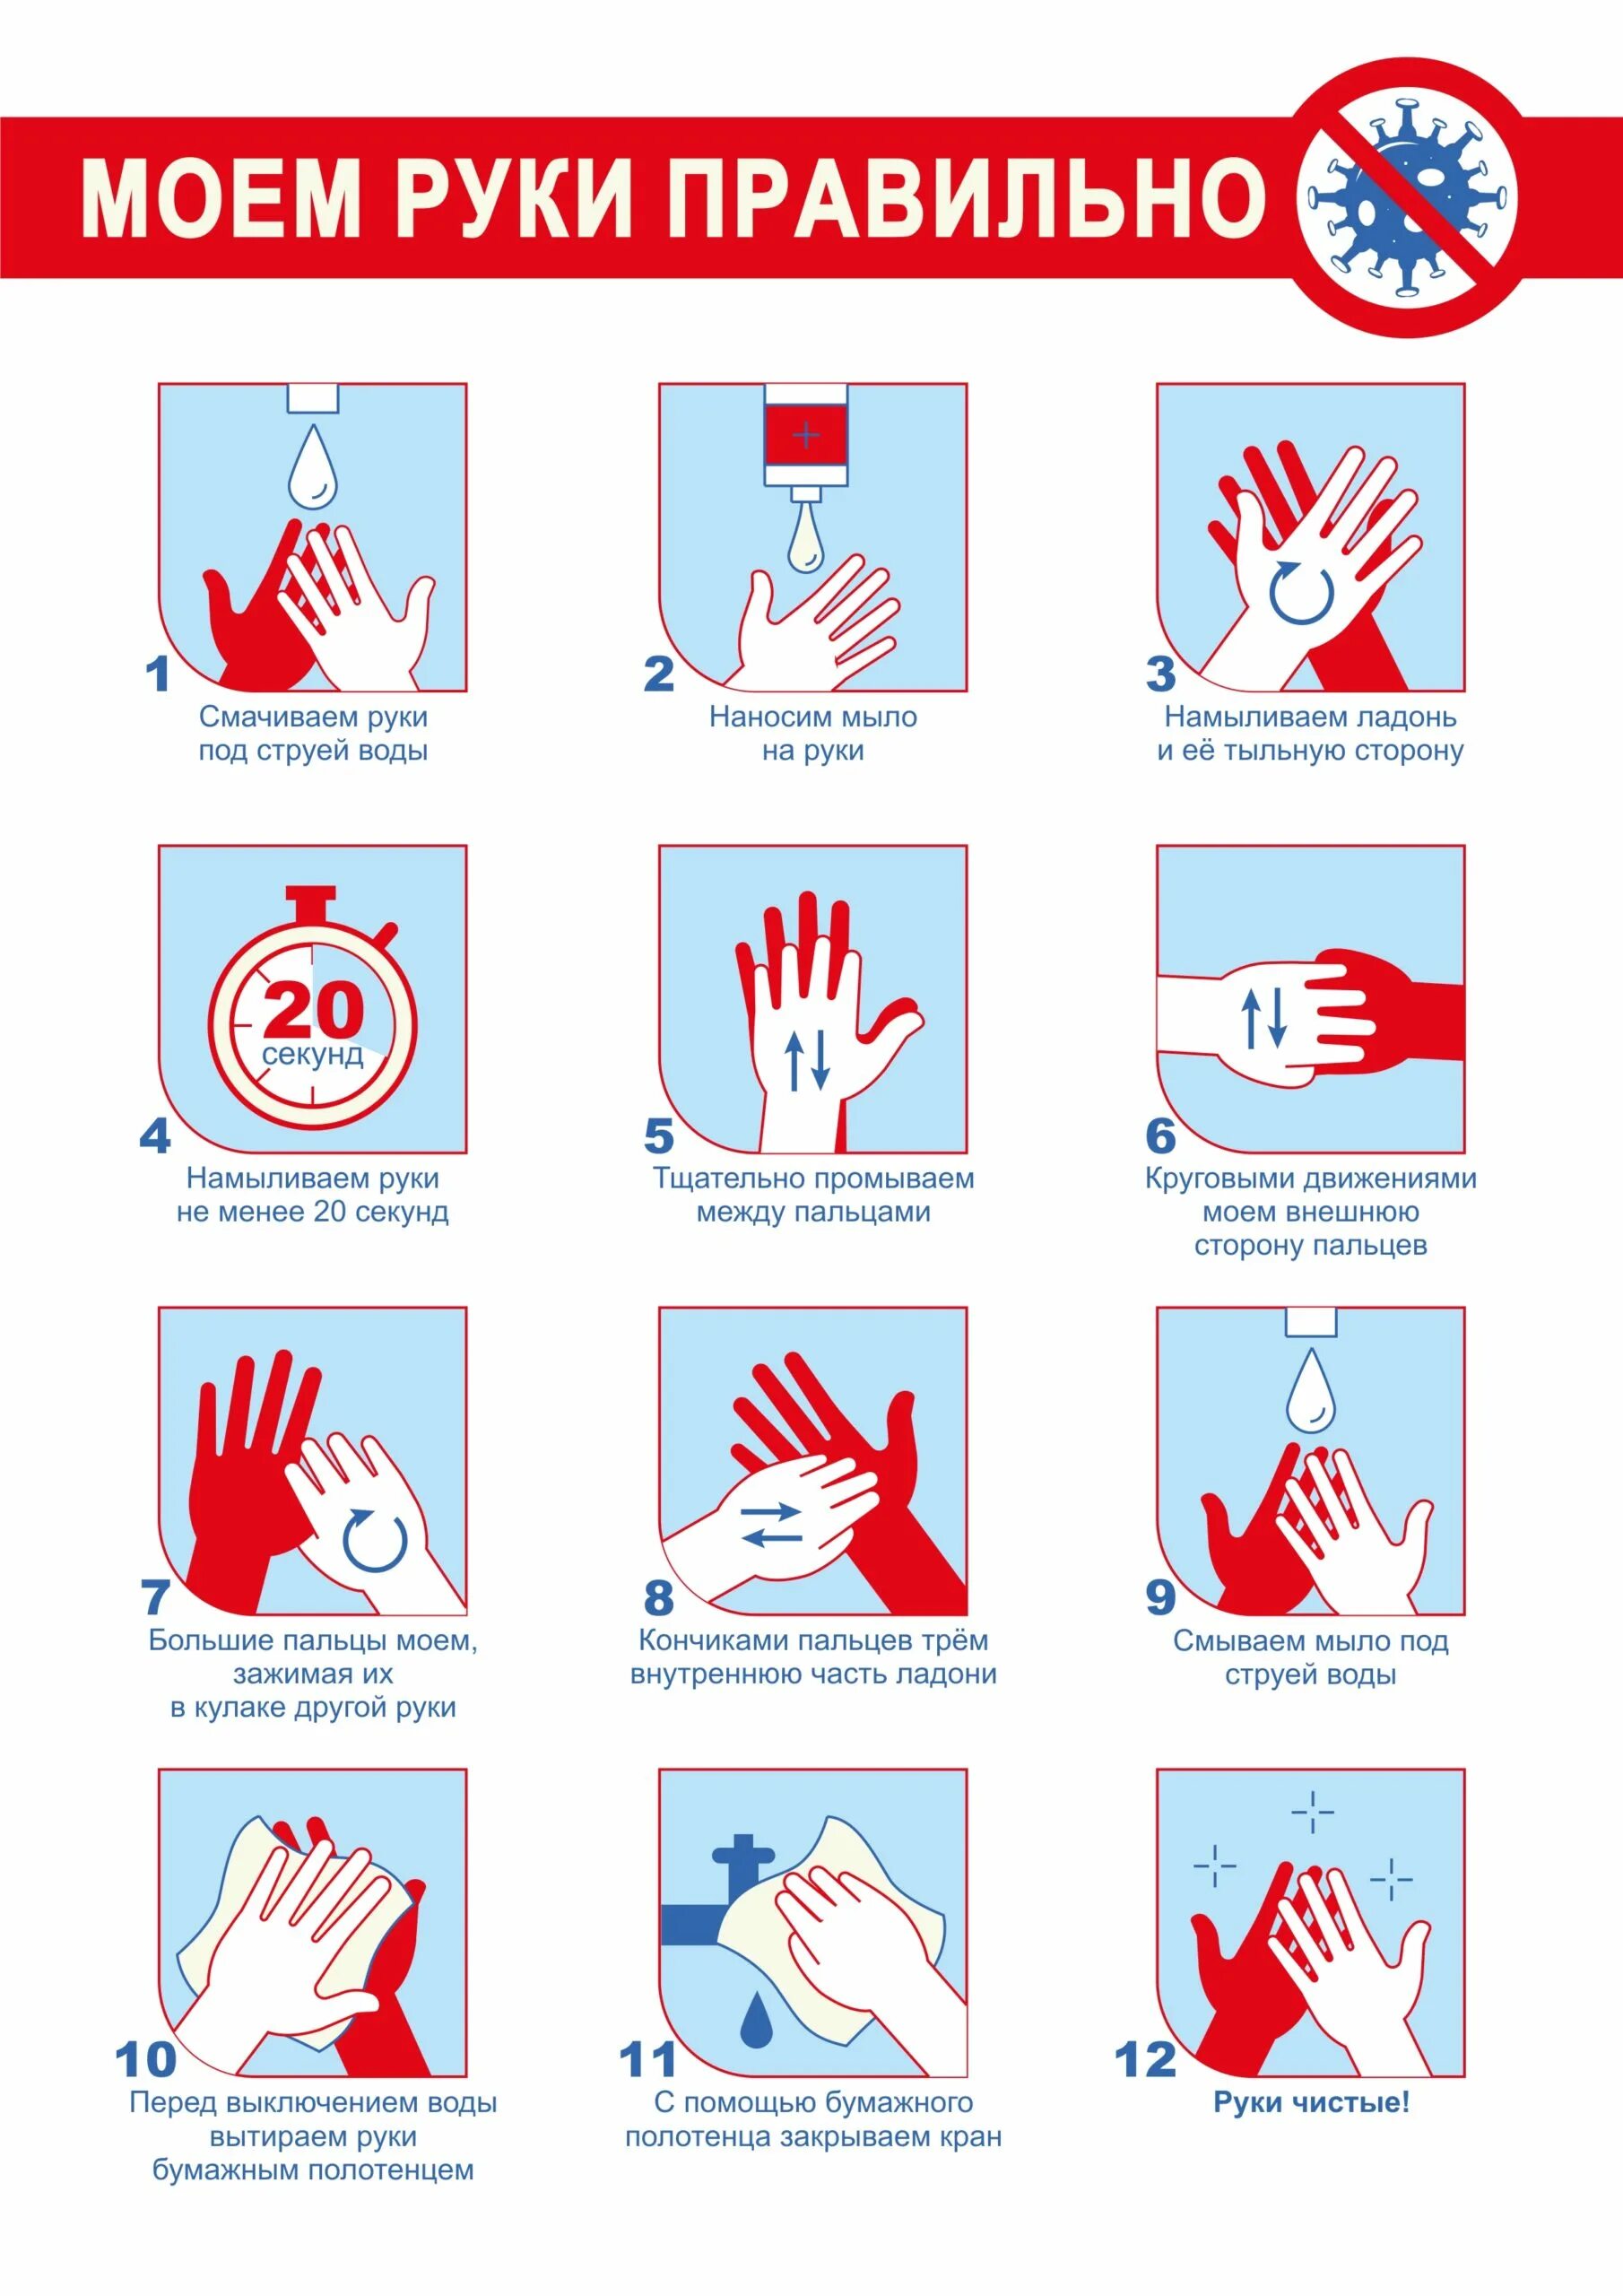 Во время мытья рук необходимо гигтест. Как правильно мыть руки. Плакат мытье рук. Правила мытья рук. Как правило мыт руки.